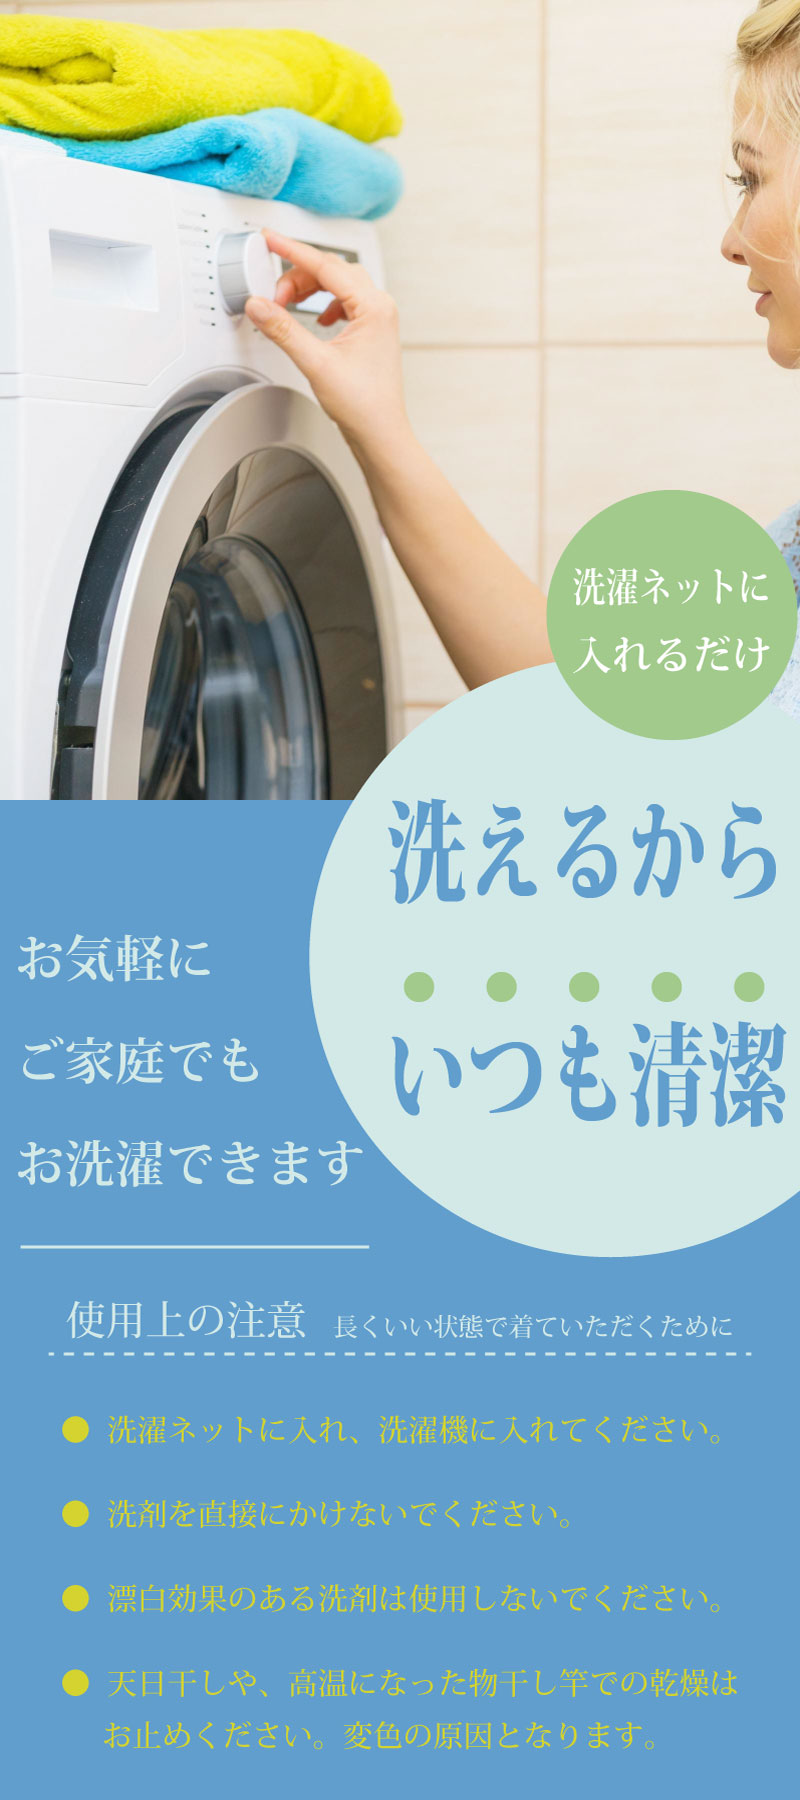 洗濯ネットに入れるだけ。洗えるからいつも清潔。お気軽にご家庭でもお選択できます。洗濯ネットに入れ、洗濯機に入れてください。洗剤を直接かけないでください。漂白効果のある洗剤は使用しないでください。天日干しや高温になった物干し竿での乾燥はおやめください。変色の原因となります。